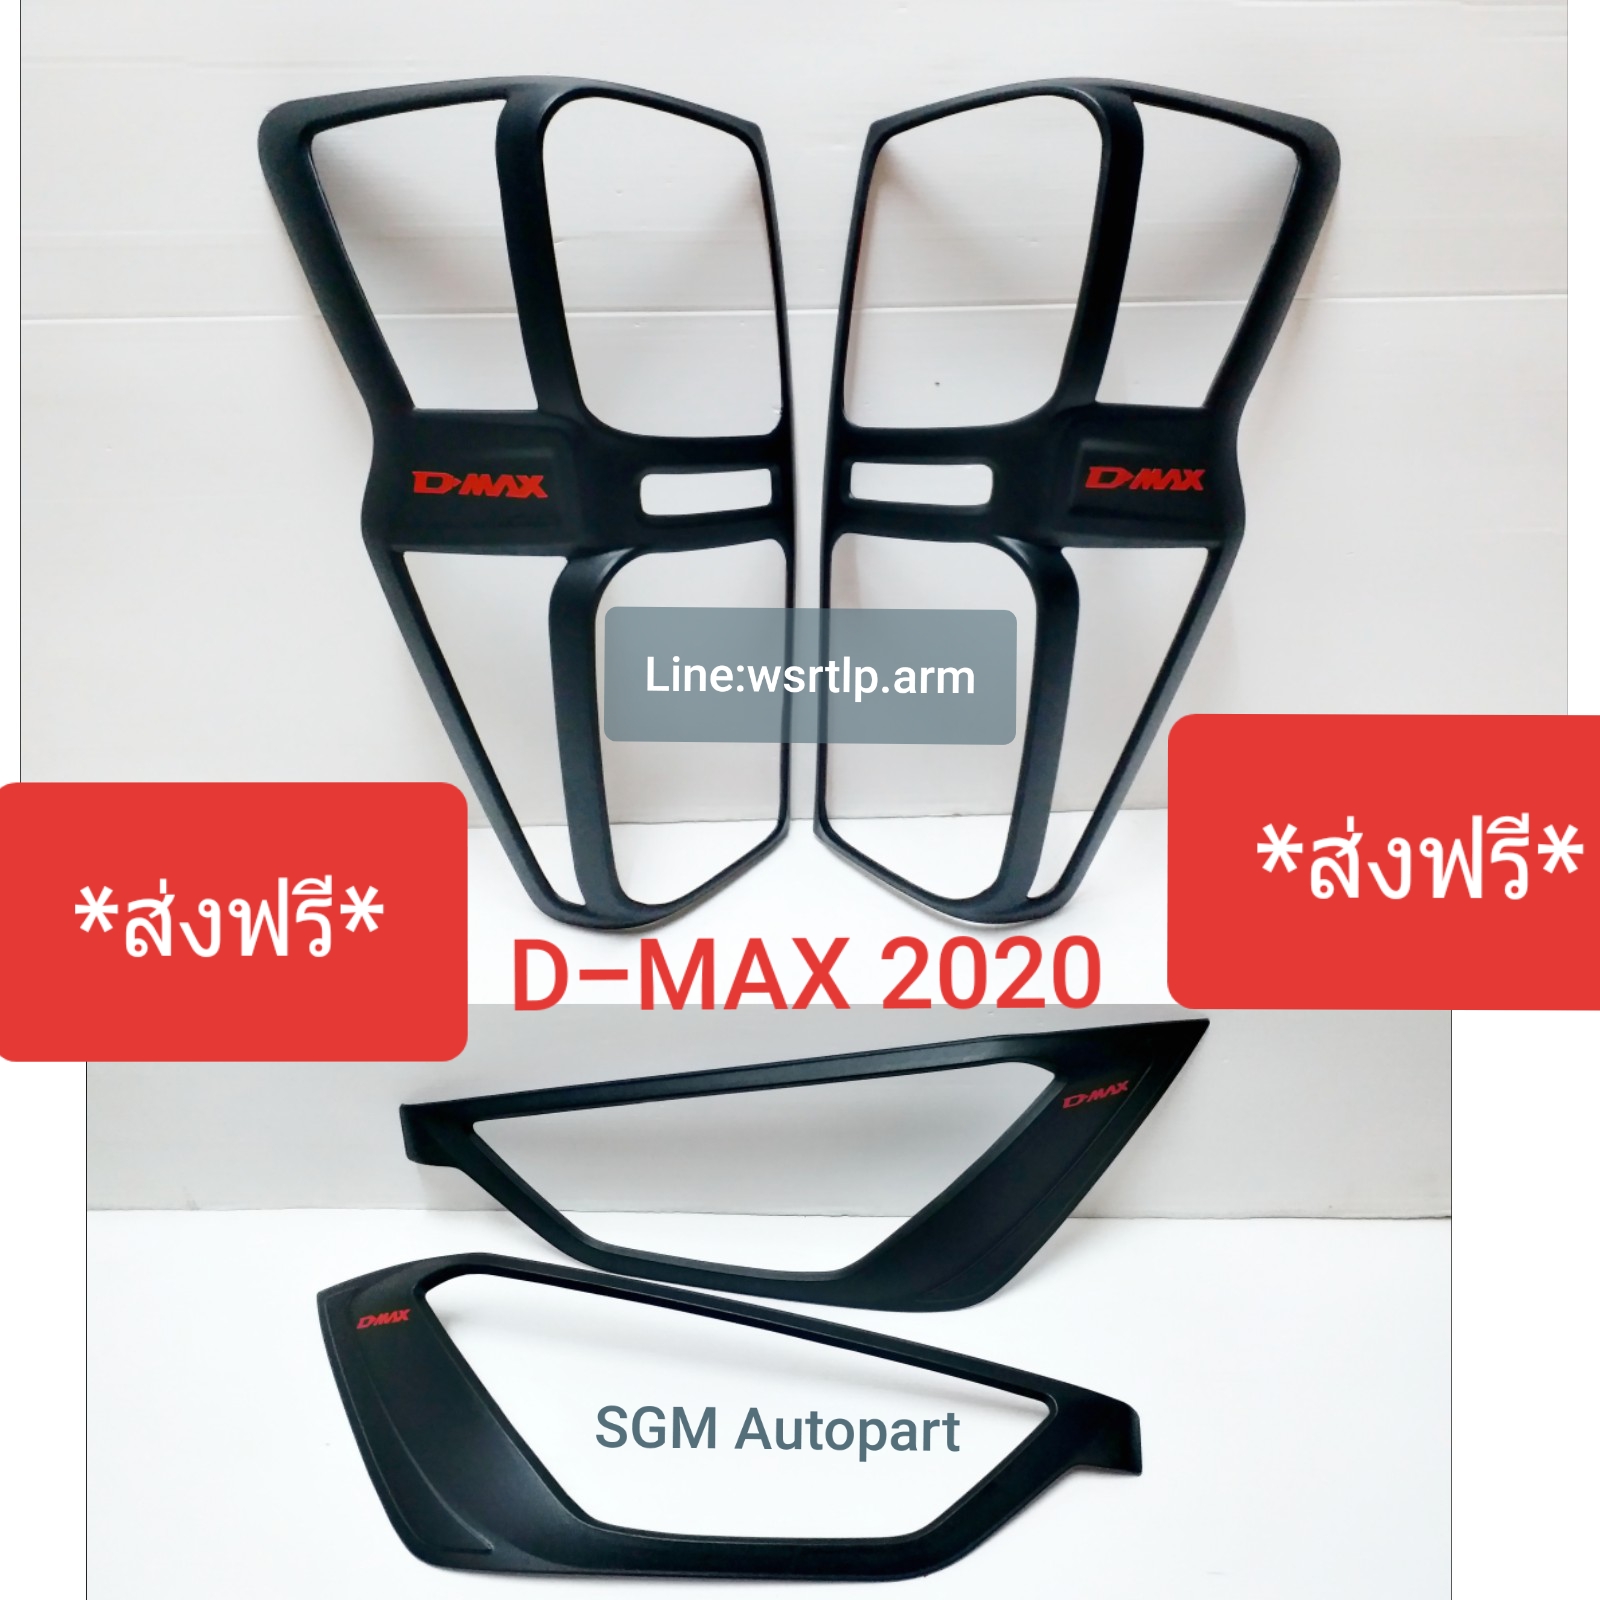 (ส่งฟรี) D-MAX ดีแม็ก 2020 ครอบไฟหน้า+ครอบไฟท้าย  สีดำด้าน โลโก้ D-MAXสีแดง งานพลาสติคอย่างดี หน้า 1คู่ หลัง 1คู่ พร้อมเทปกาว 2หน้าสำหรับติดตั้ง